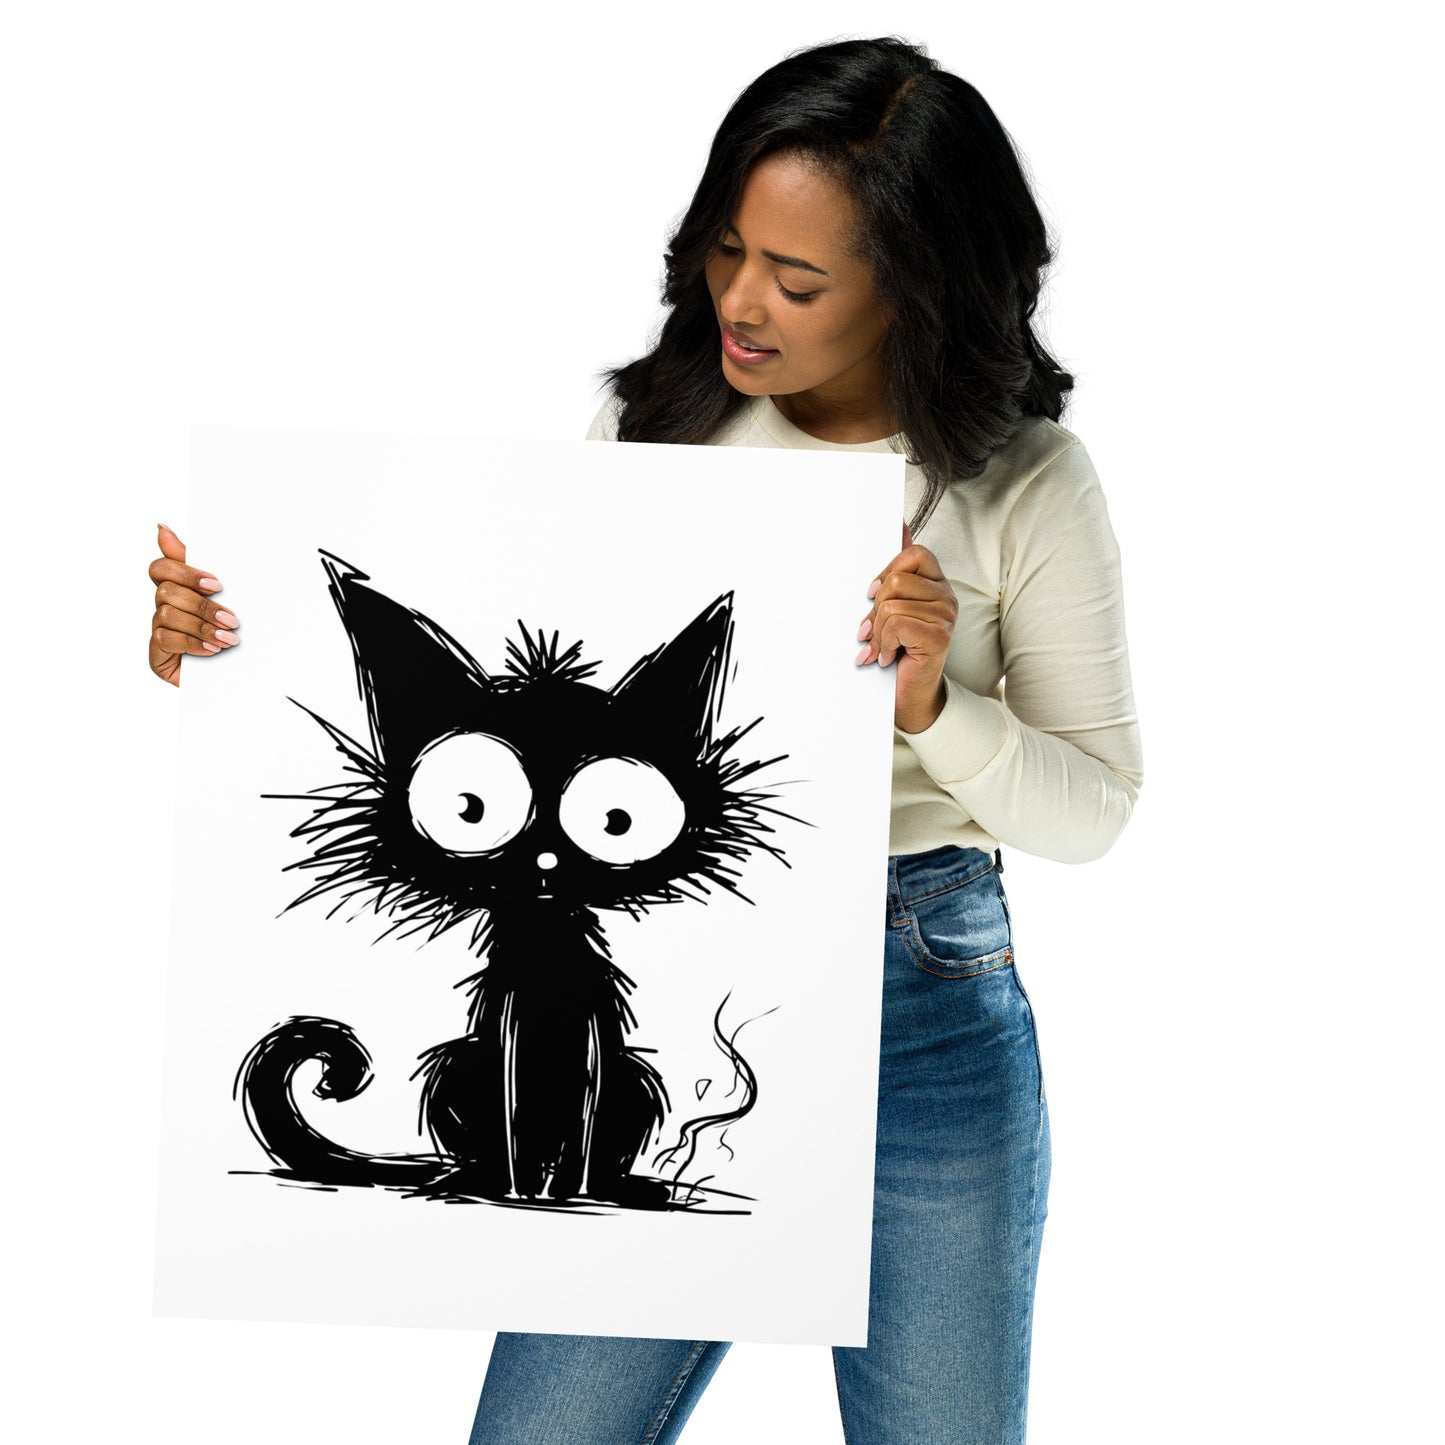 Arte caprichoso del gato / Arte del cartel del gato negro